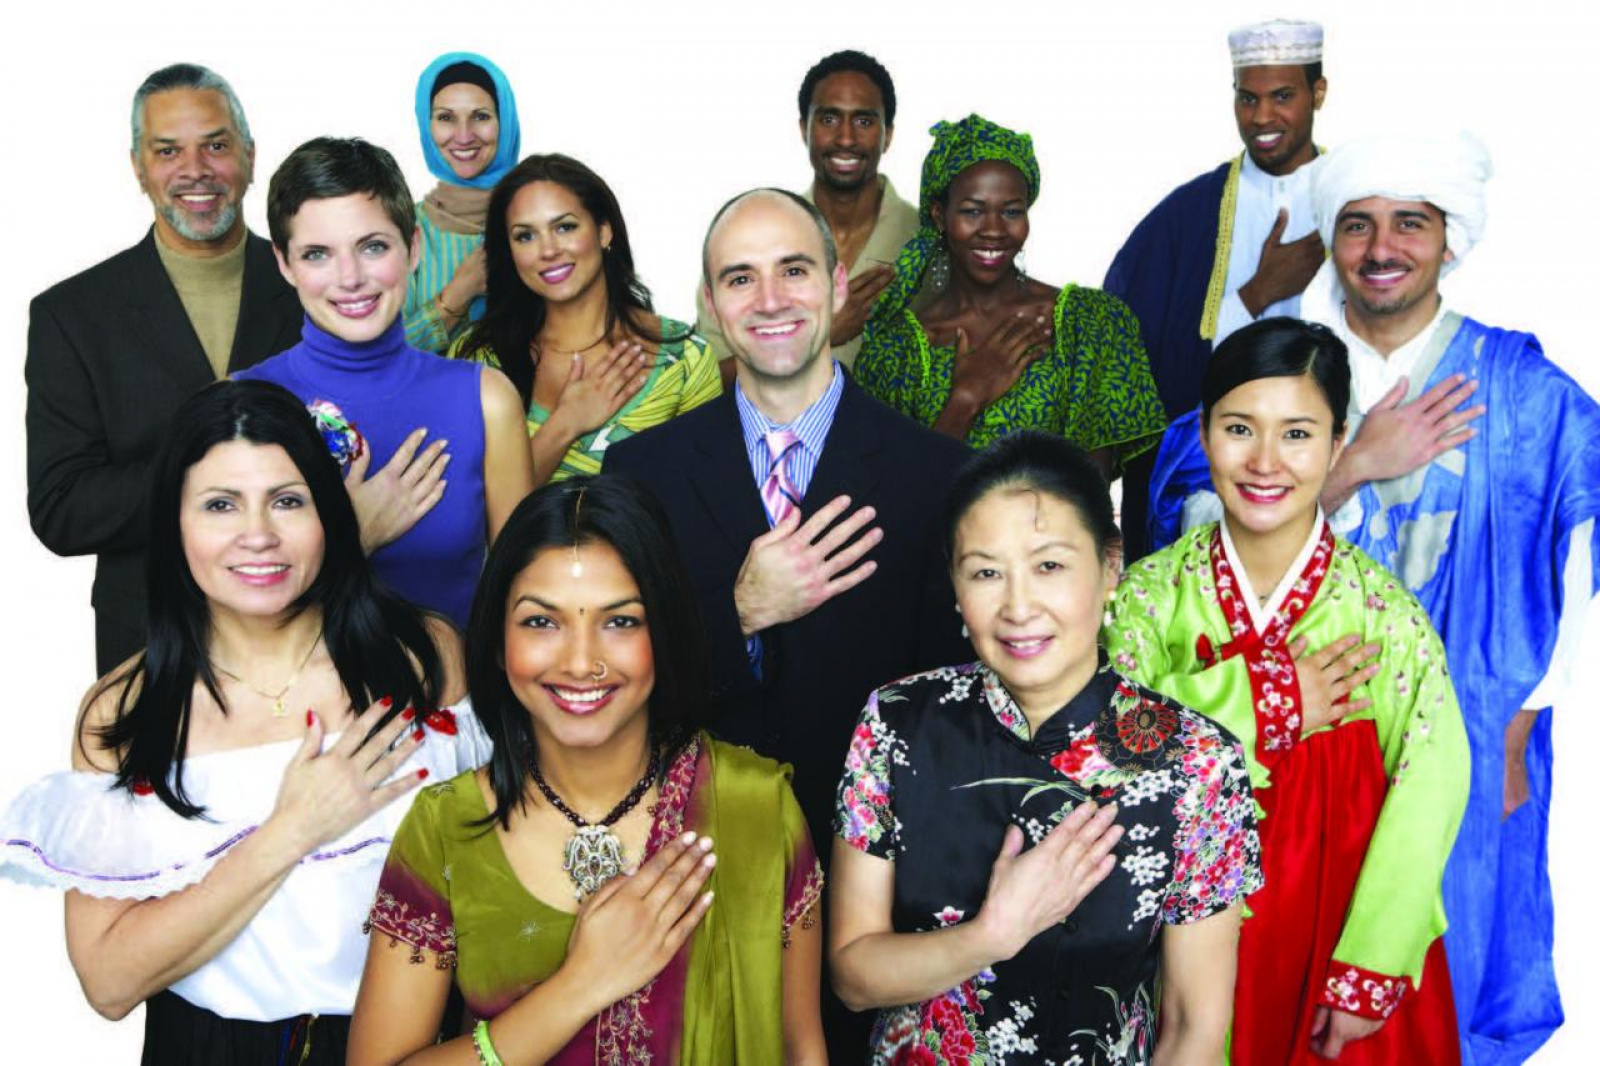 фото людей разных национальностей мира